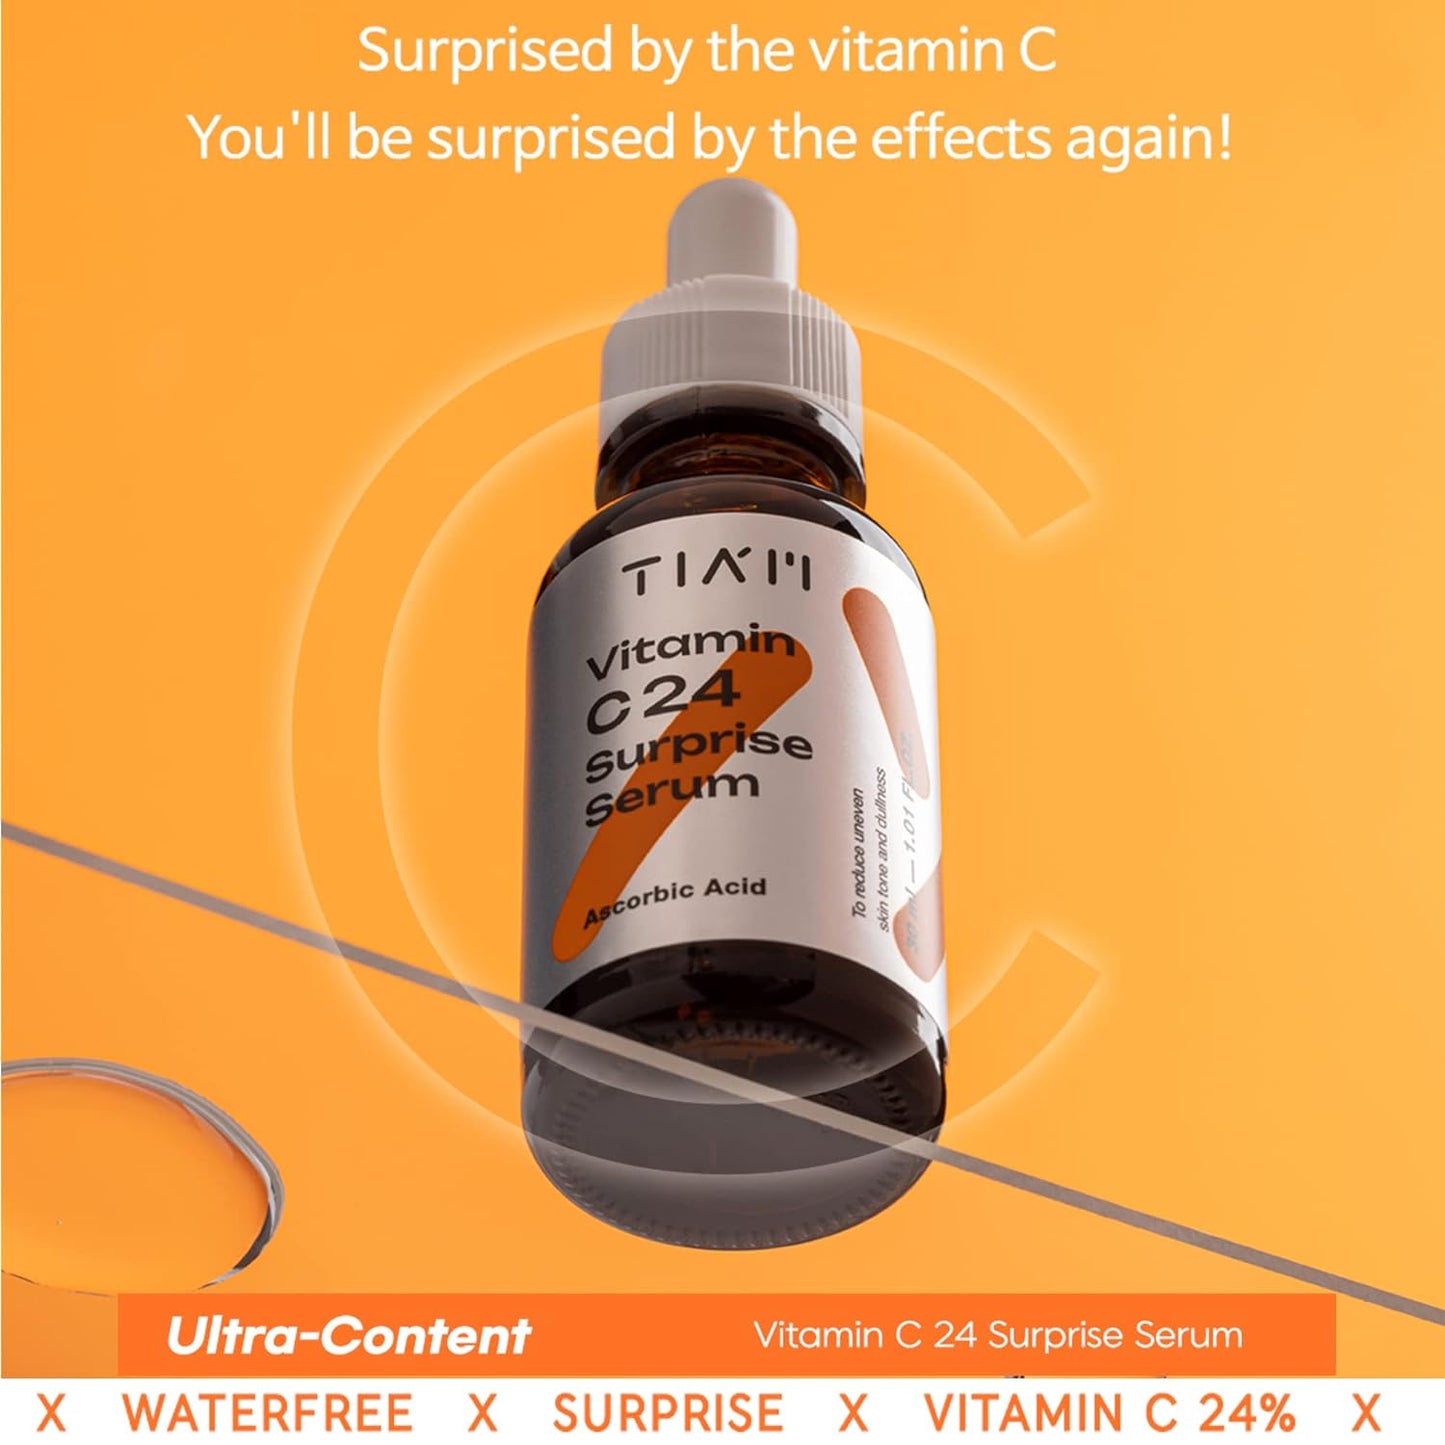 TIAM Vitamin C24 Surprise Serum (30ml 1.01fl oz.) Facial Skin Care